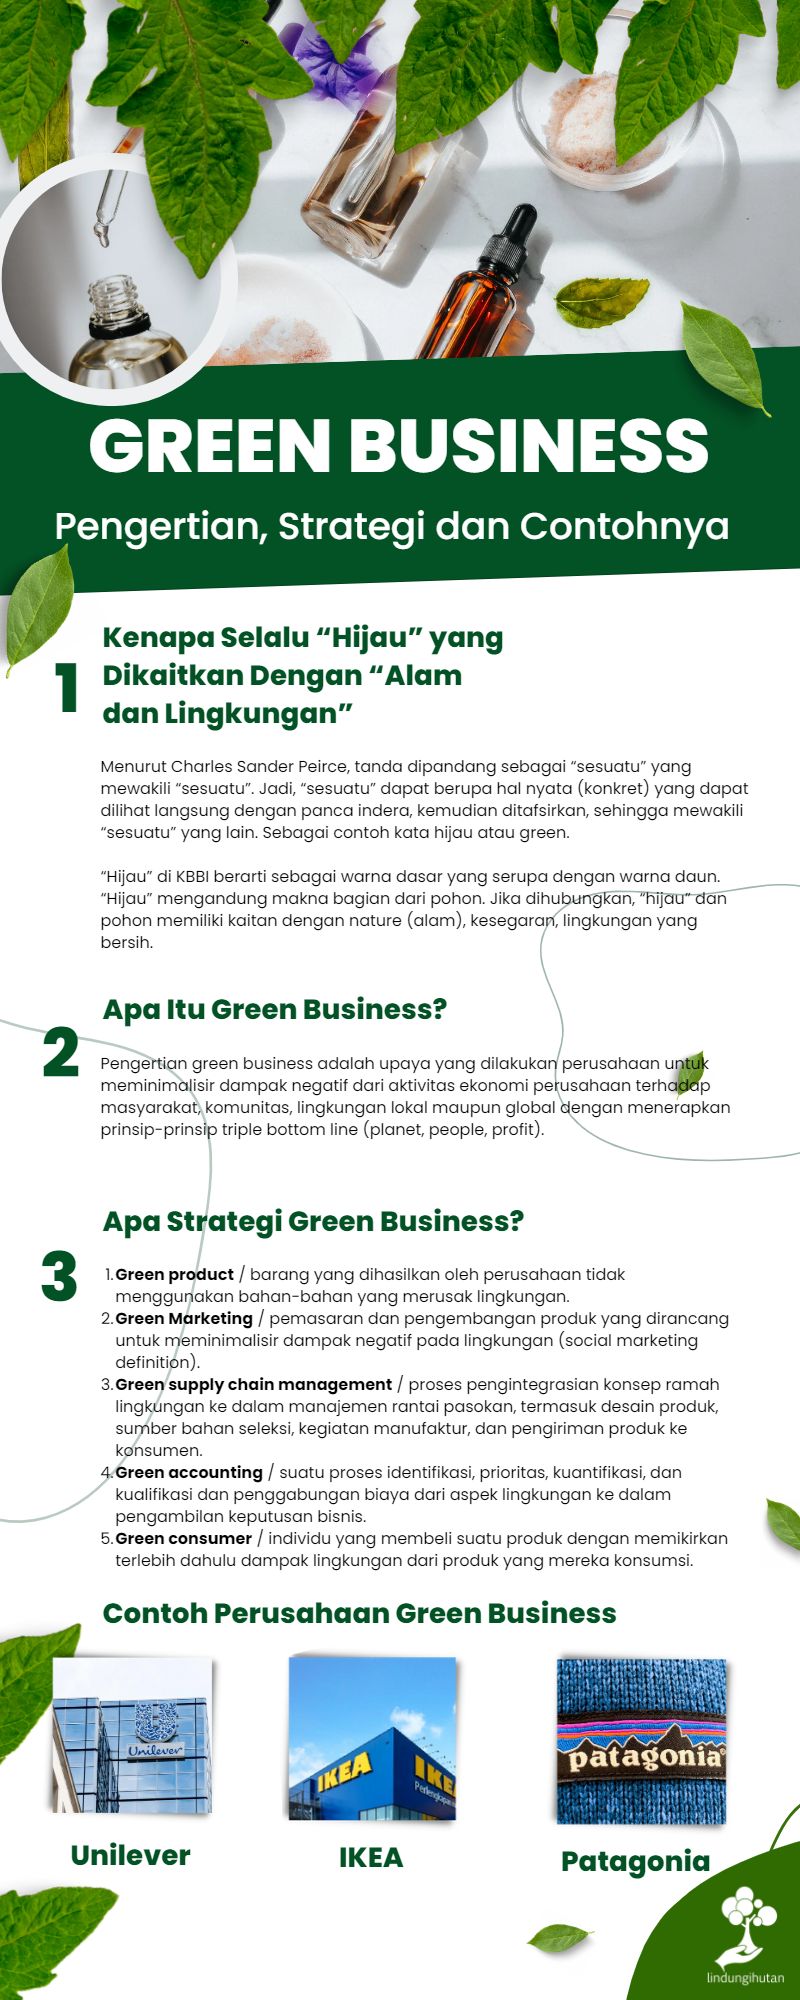 Apa itu green business?